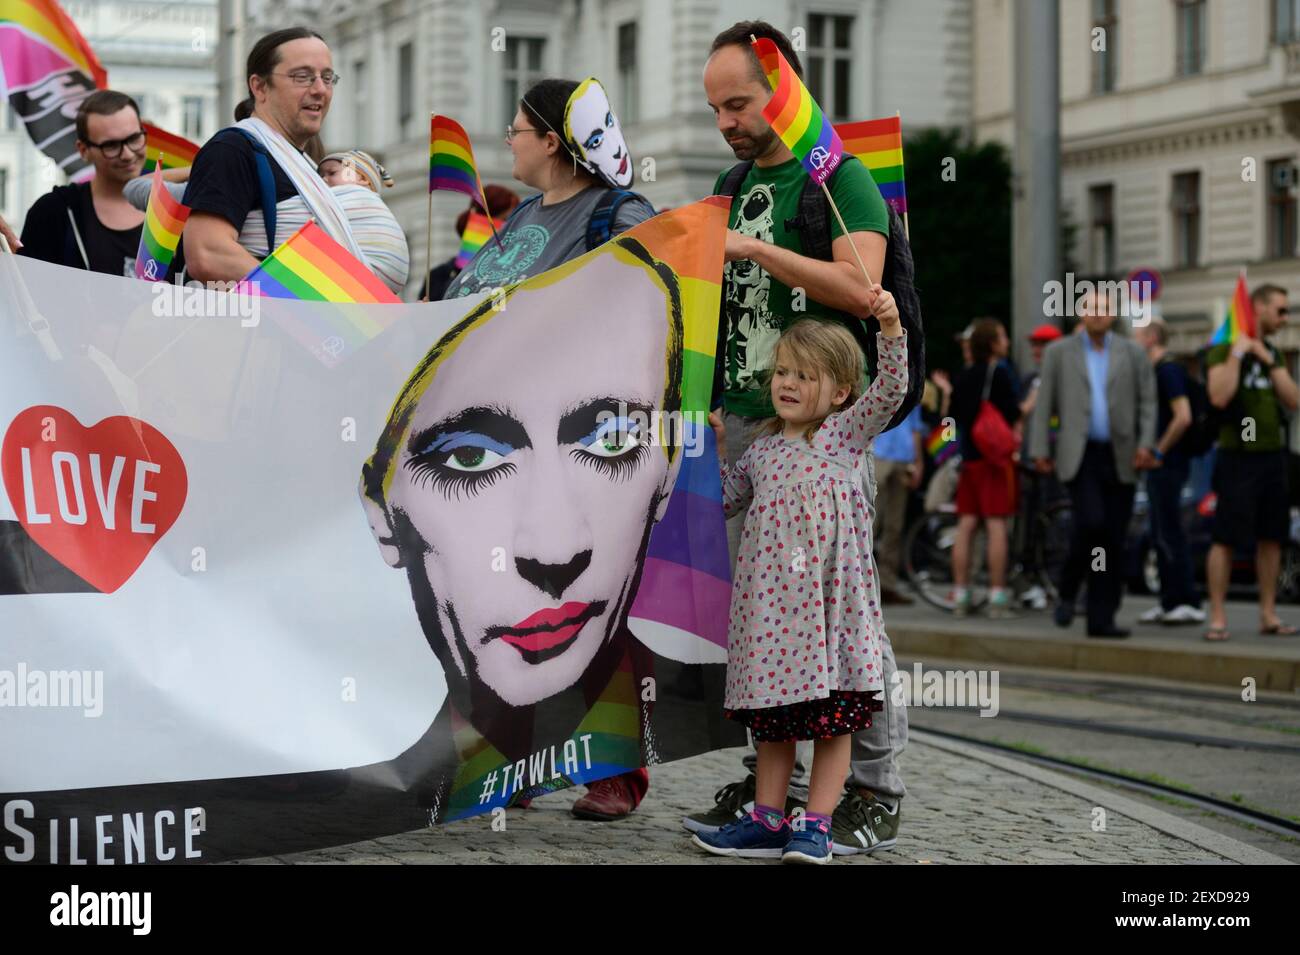 Viena, Austria. 24 de junio de 2014. Marcha de protesta a Rusia con Amor. Como señal de solidaridad con lesbianas, gays y personas transgénero y como protesta contra el empeoramiento de la situación de los derechos humanos en Rusia. Foto de stock